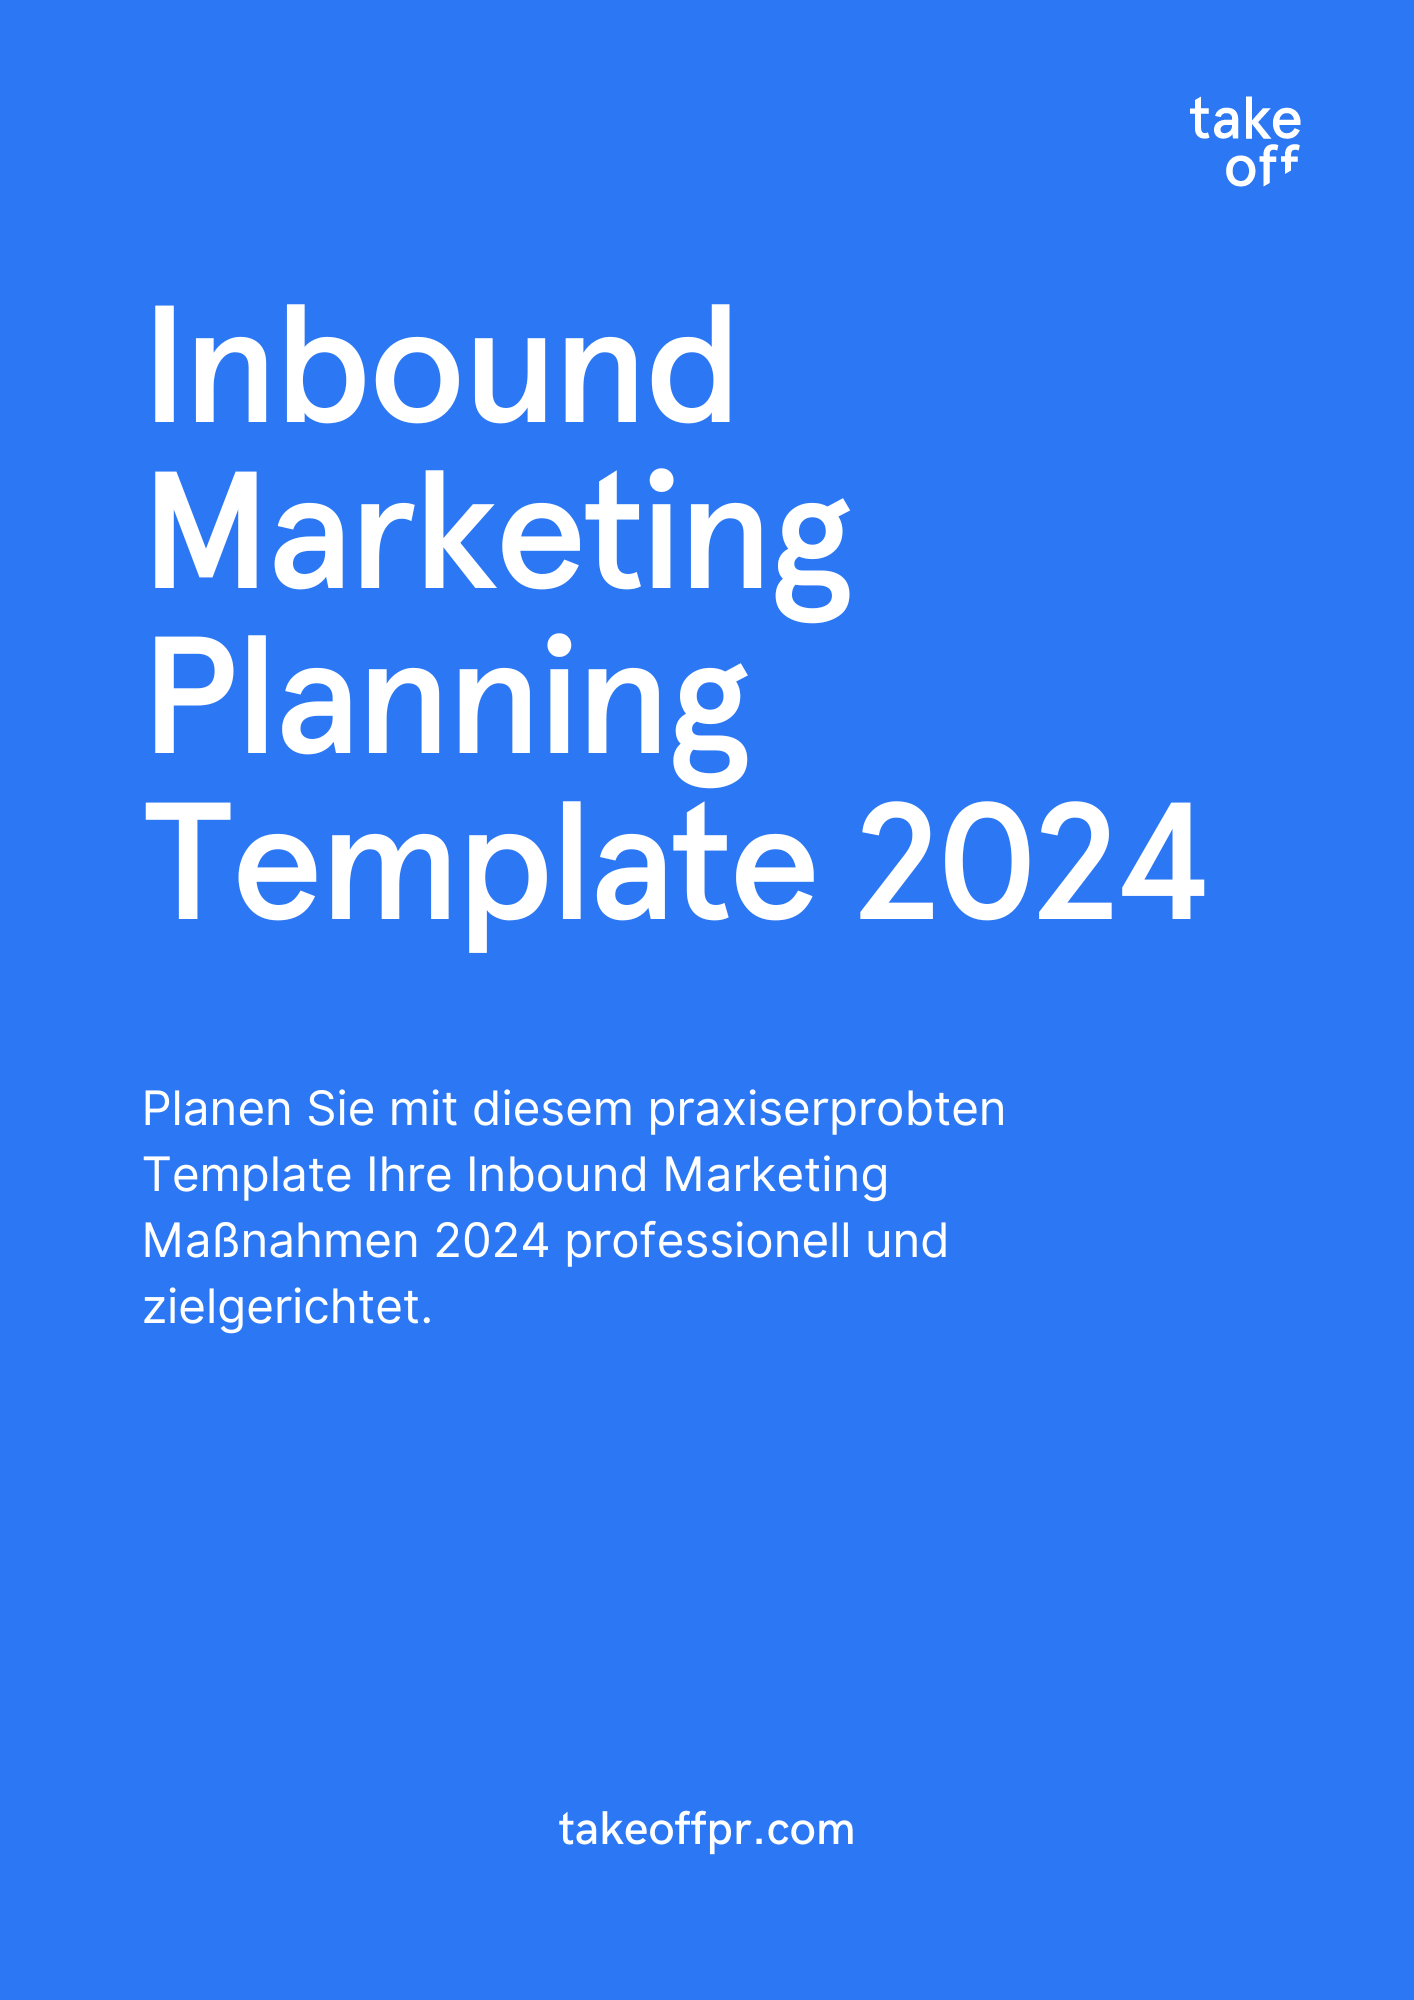 Inbound Marketing Planning Template 2024